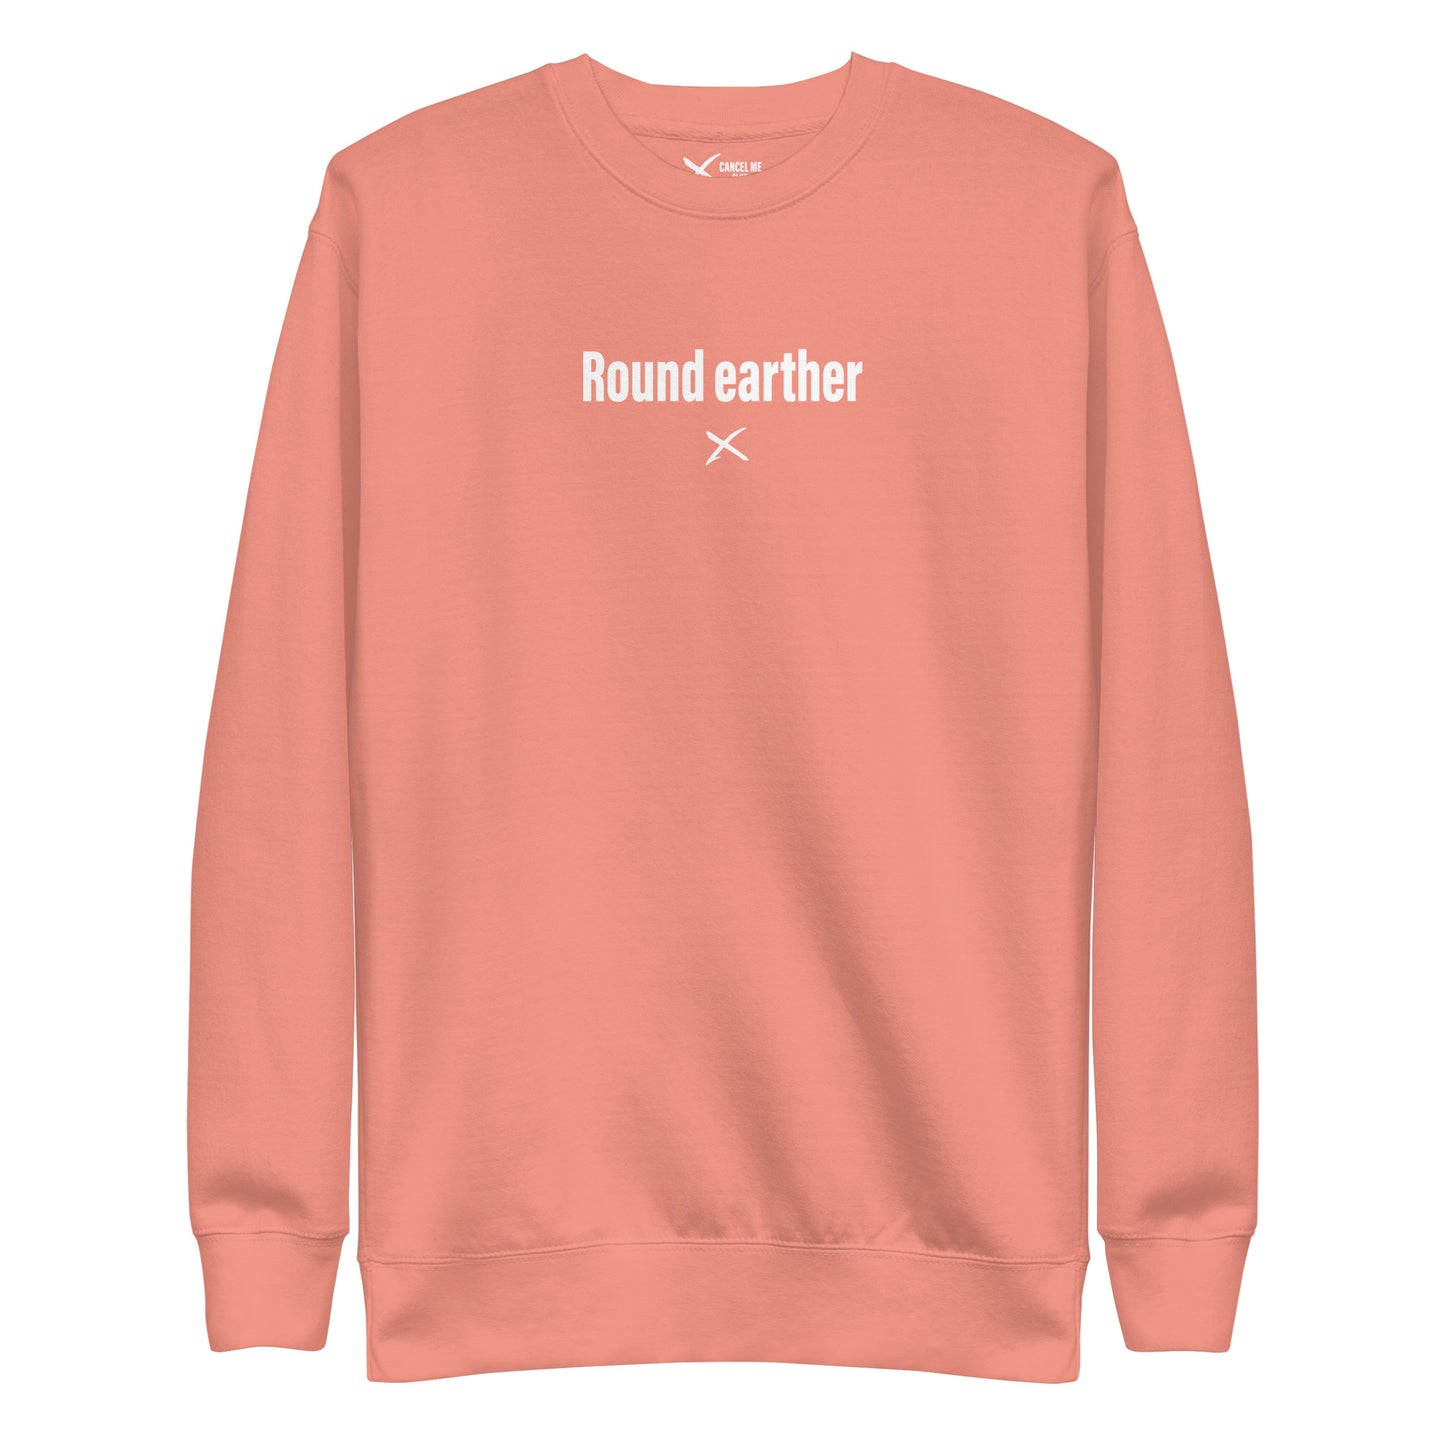 Round earther - Sweatshirt